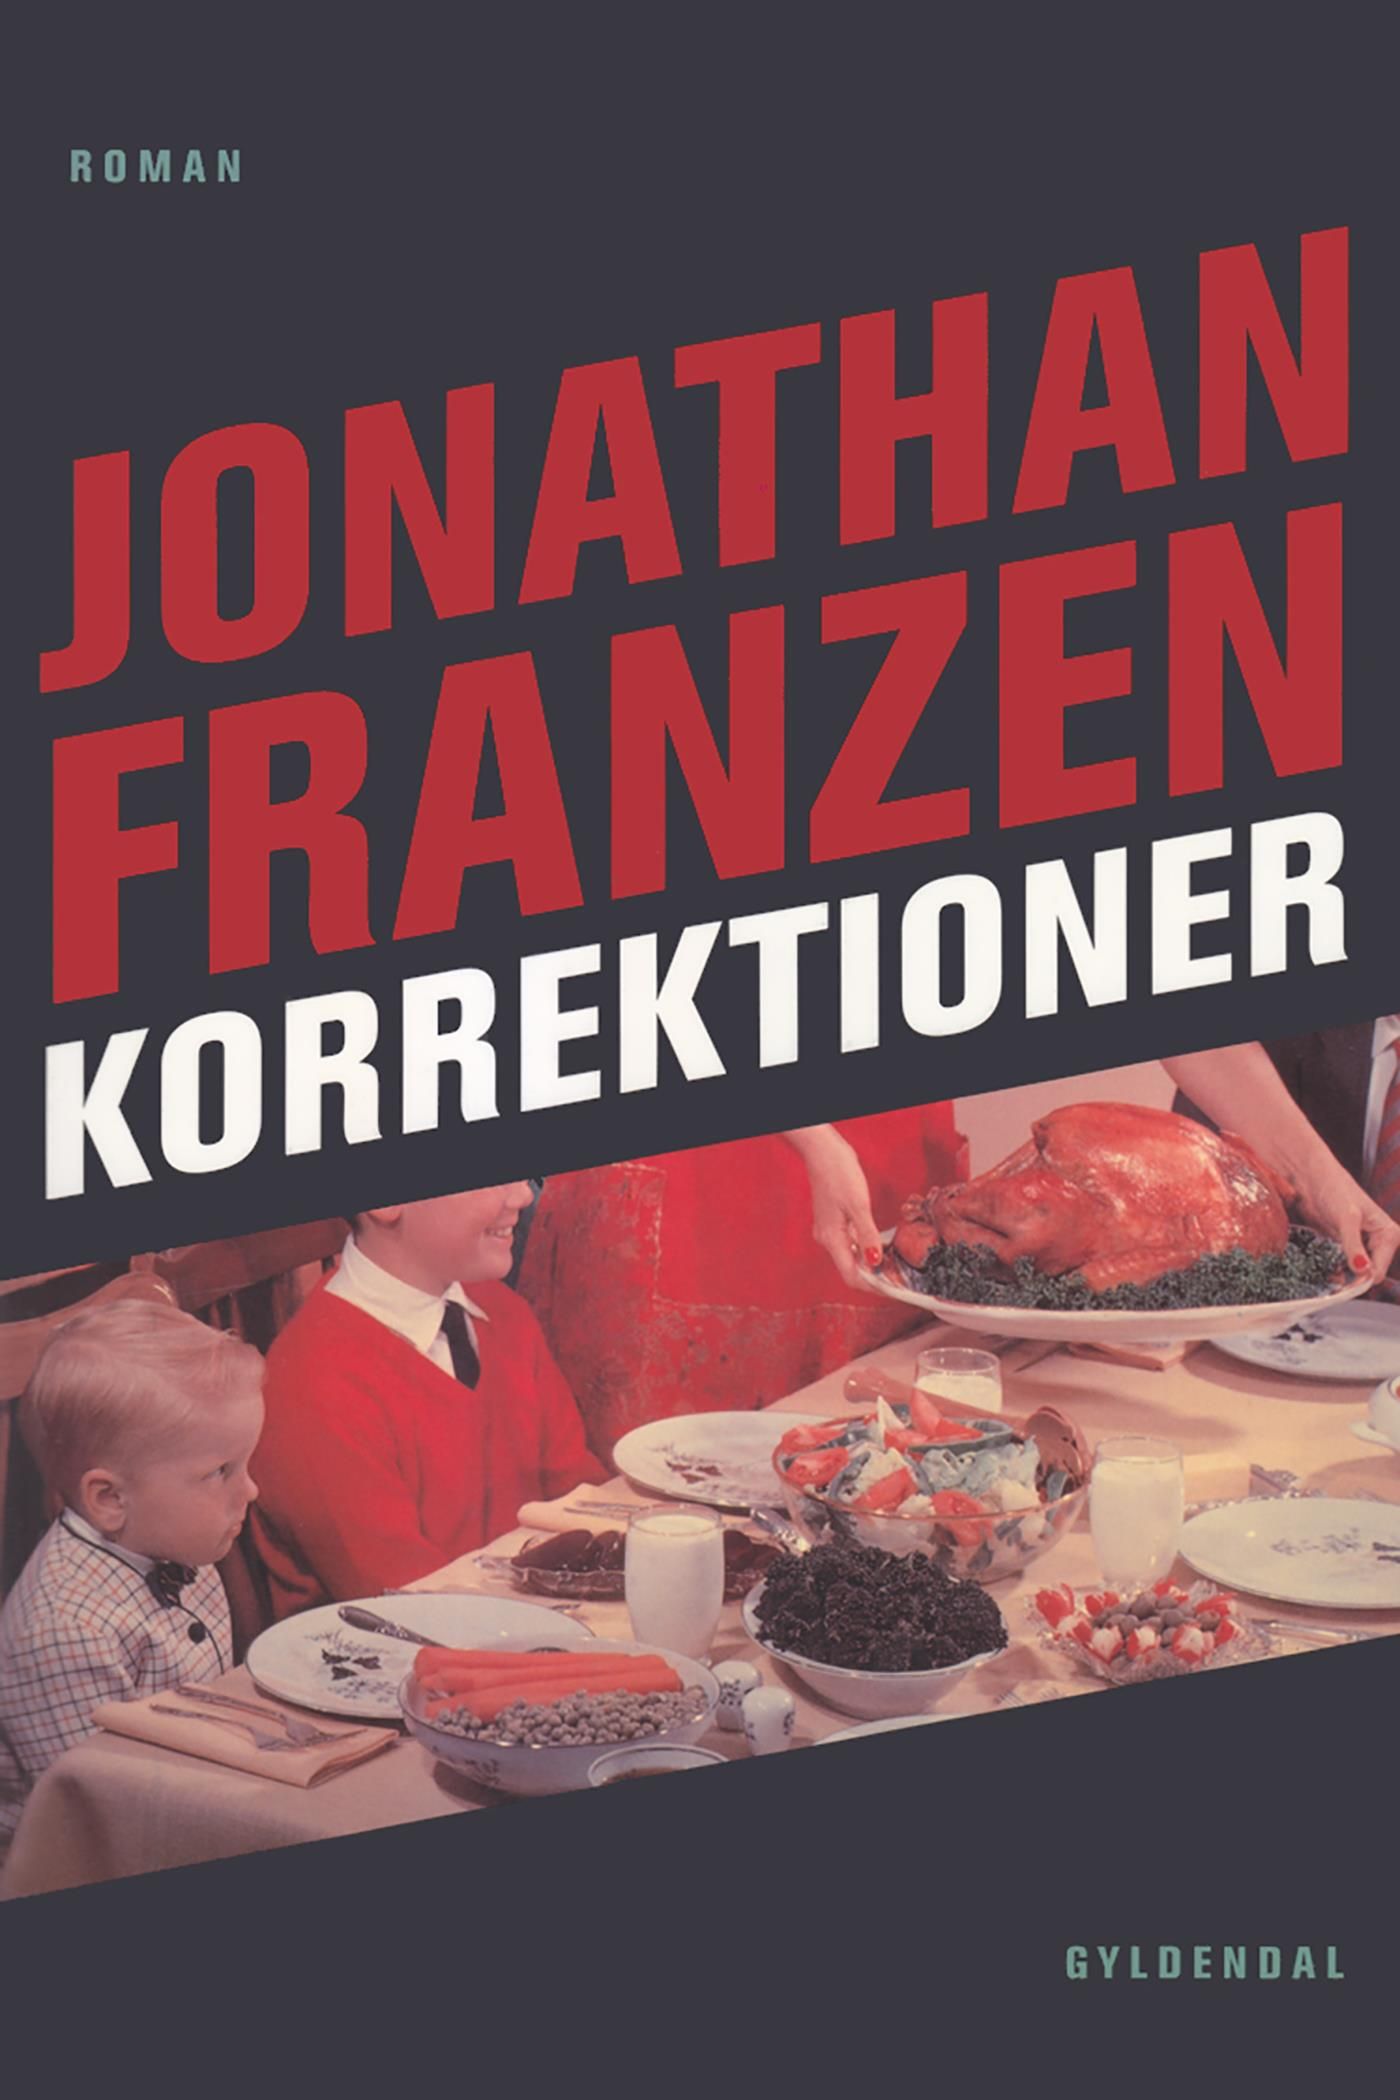 Korrektioner, e-bok av Jonathan Franzen, Jonathan Franzen